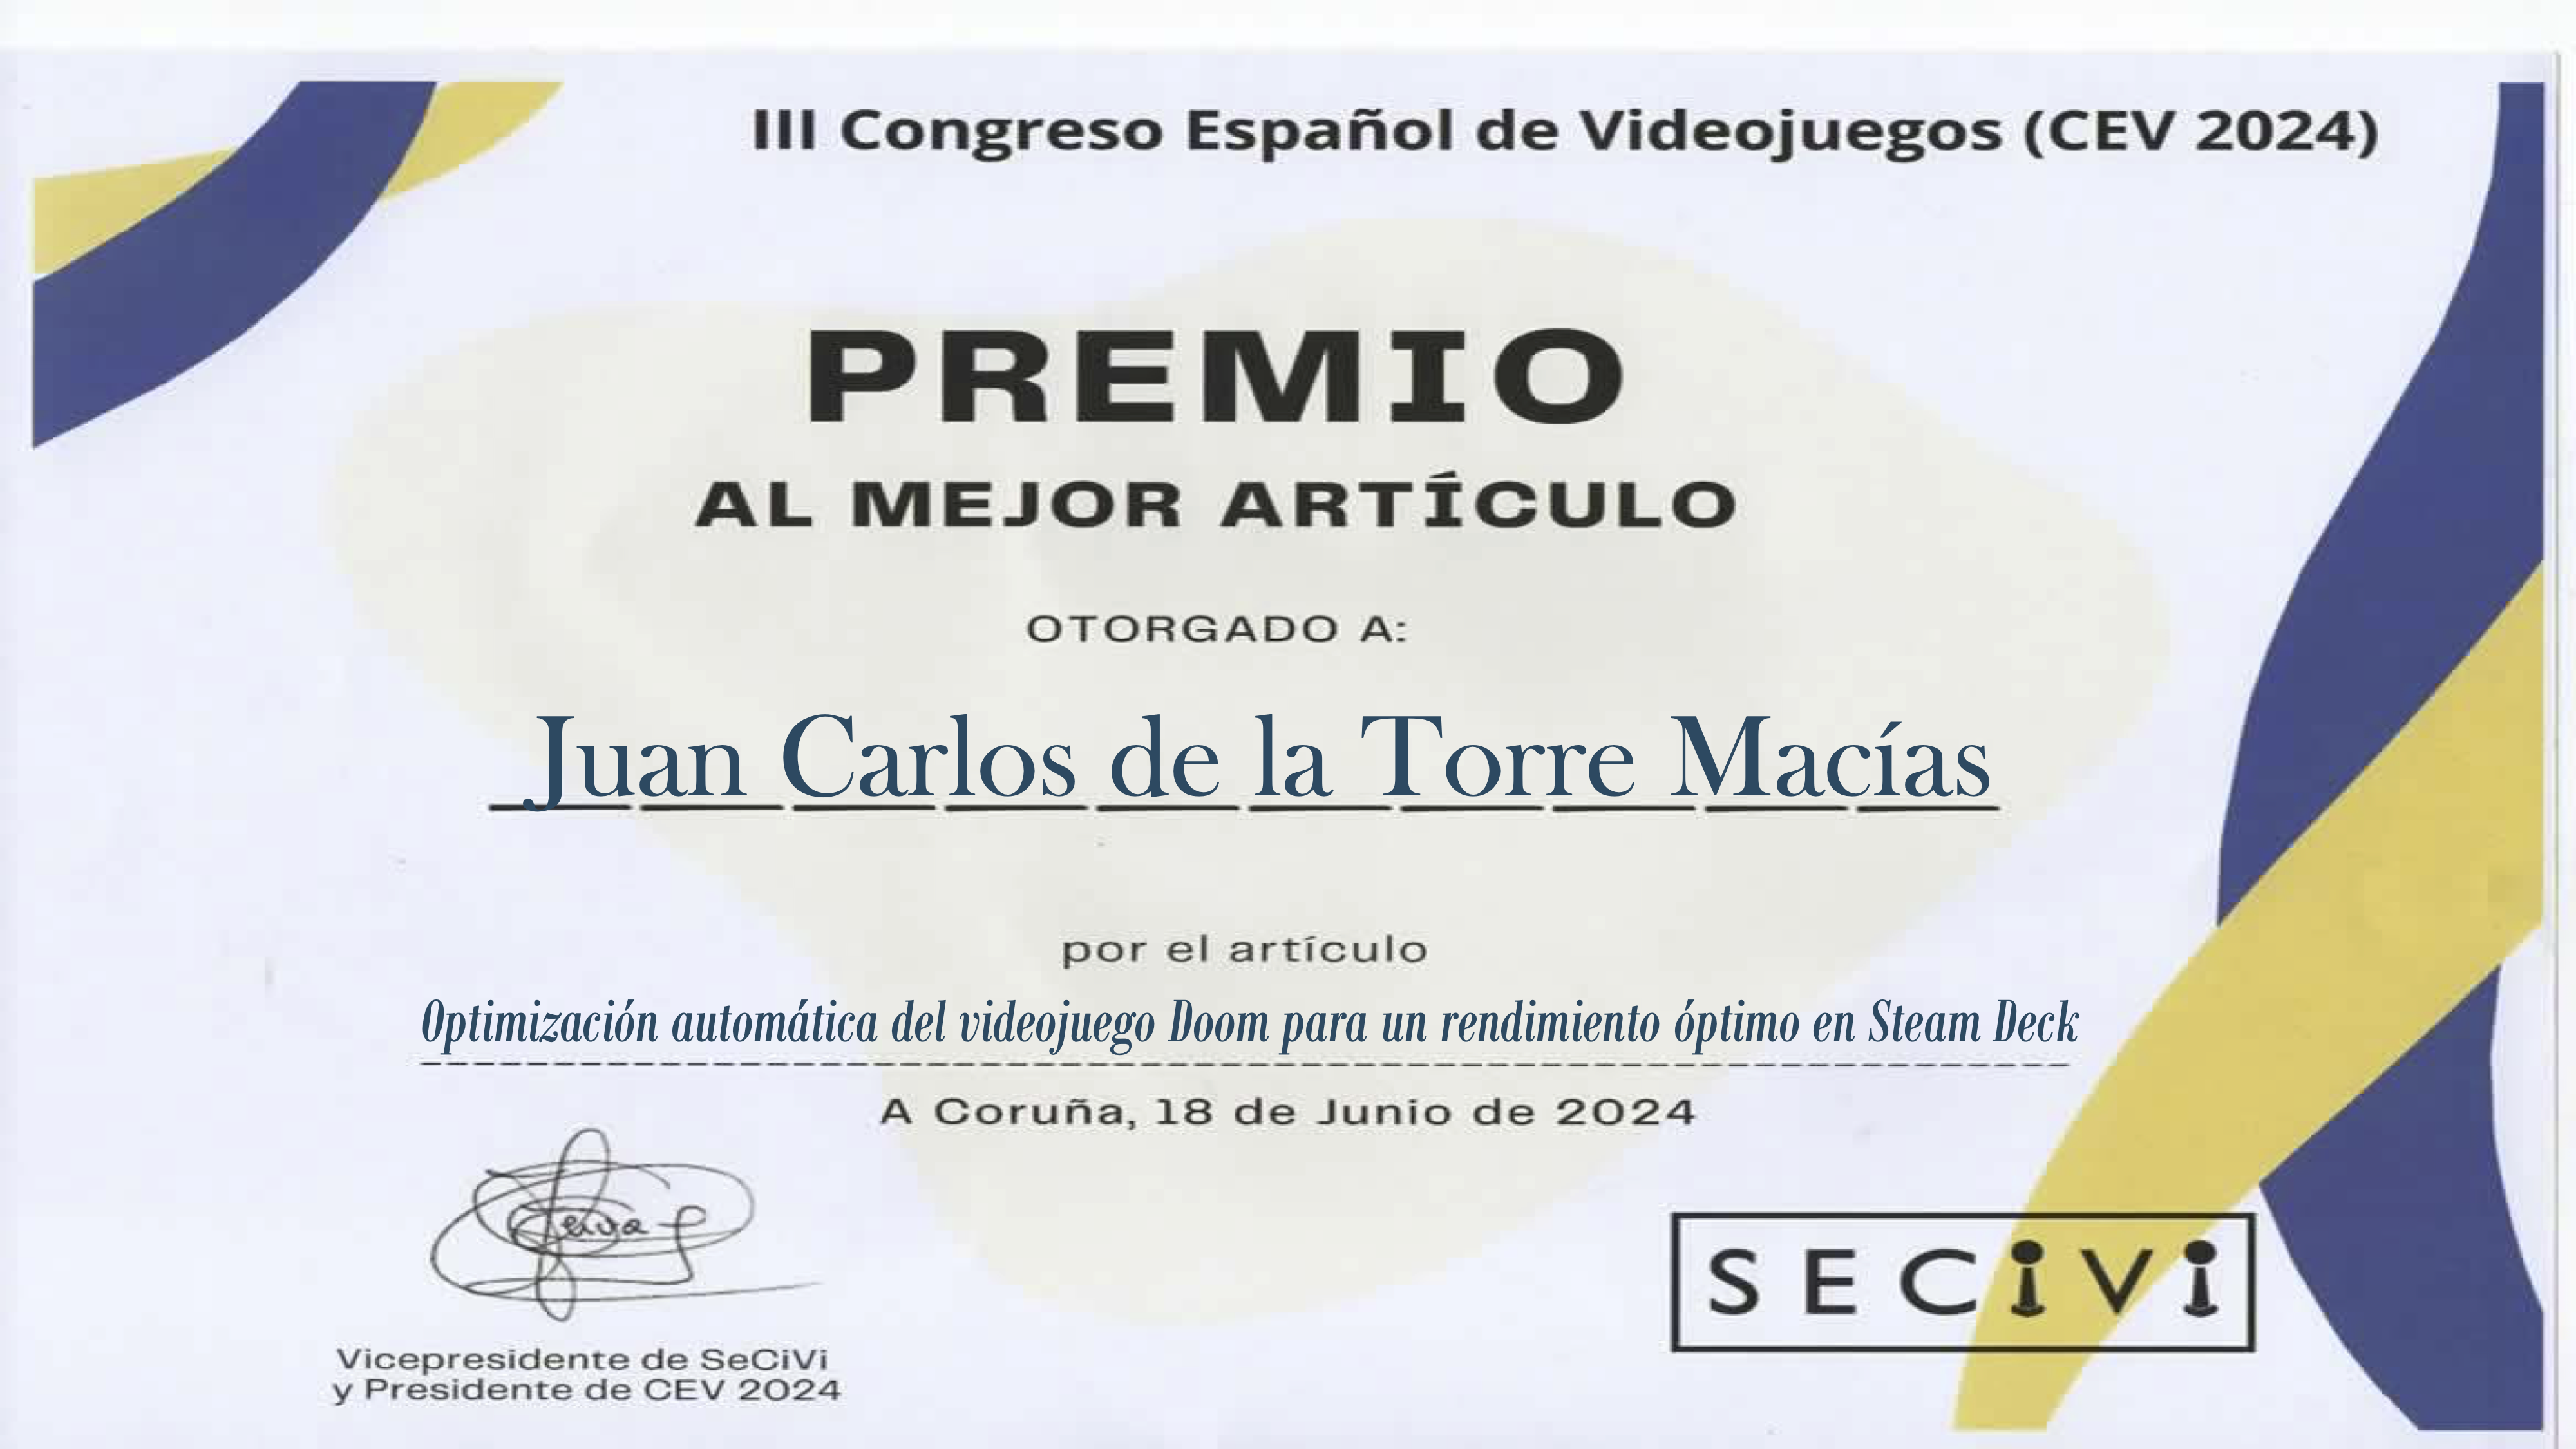 Best Paper Award in Conferencia Española de Videojuegos (CEV 2024)